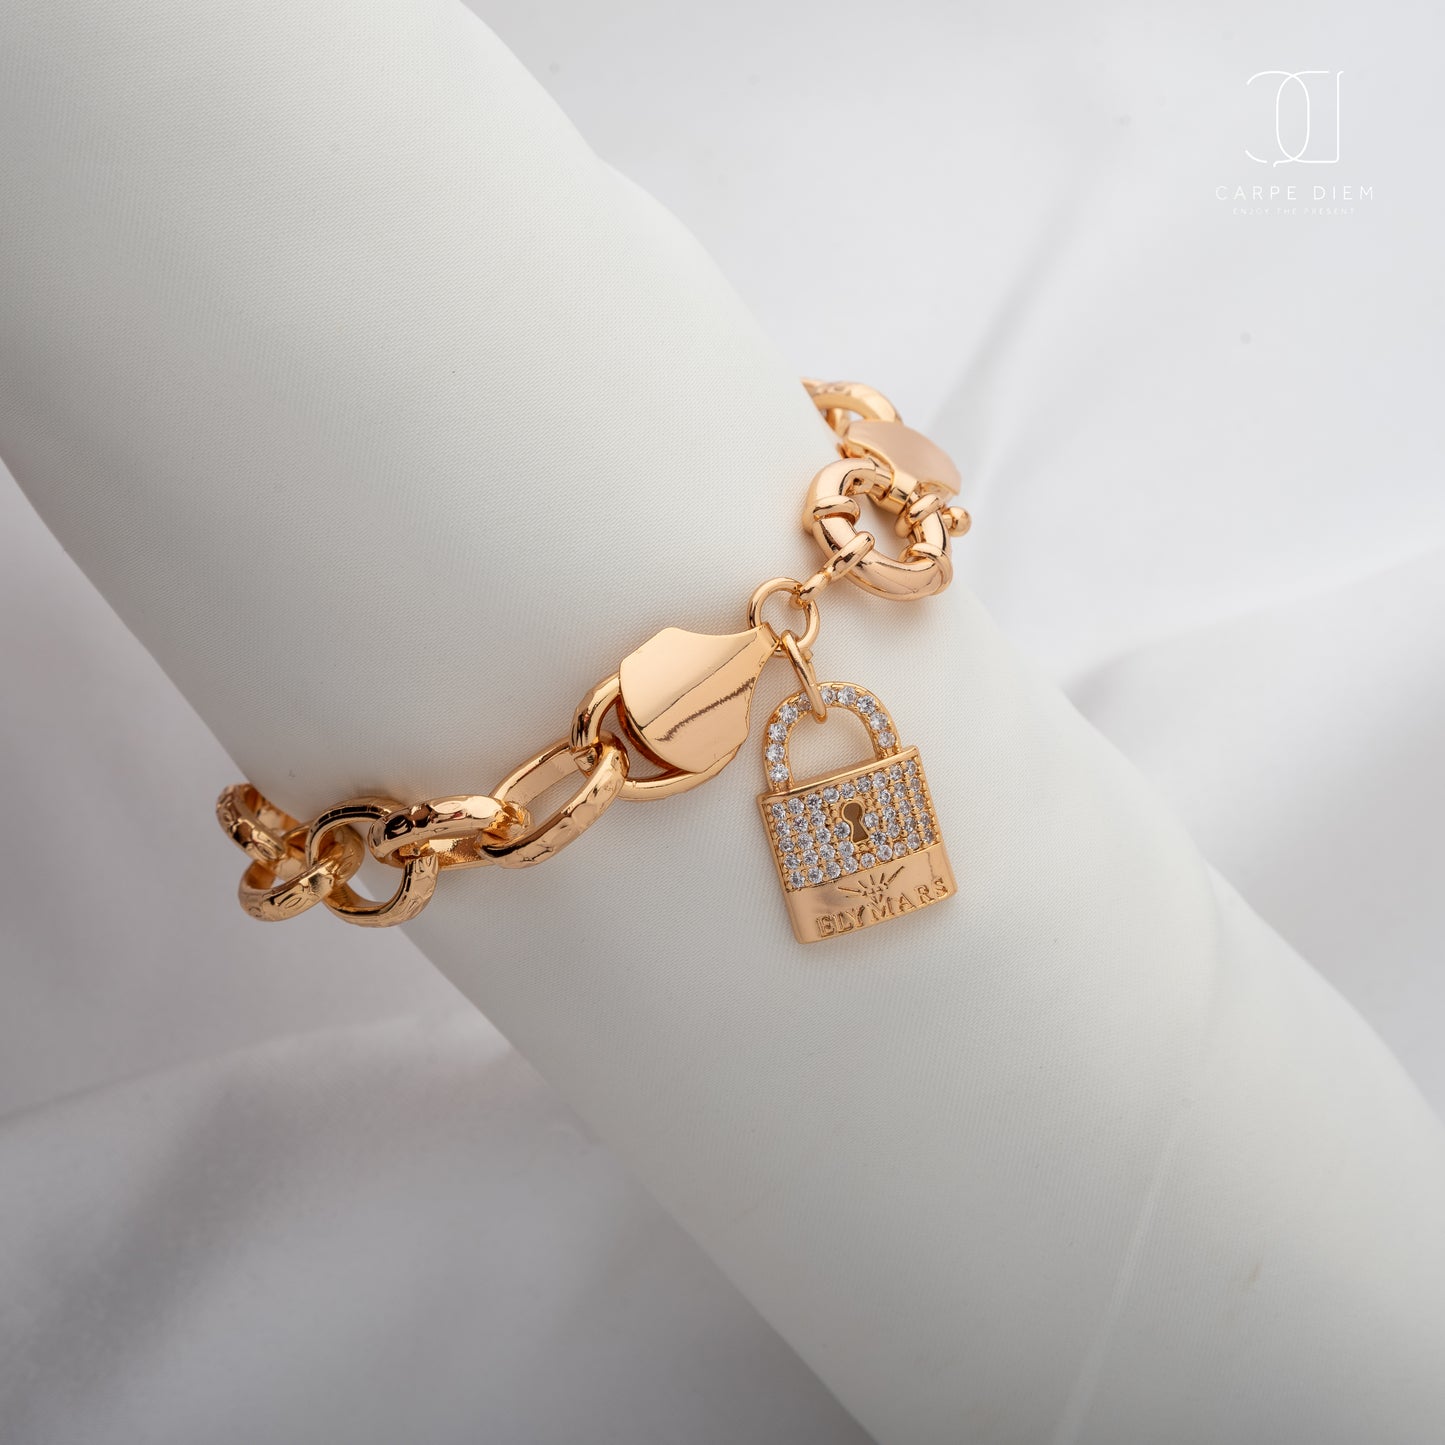 CDBR172- Gold plated Bracelet